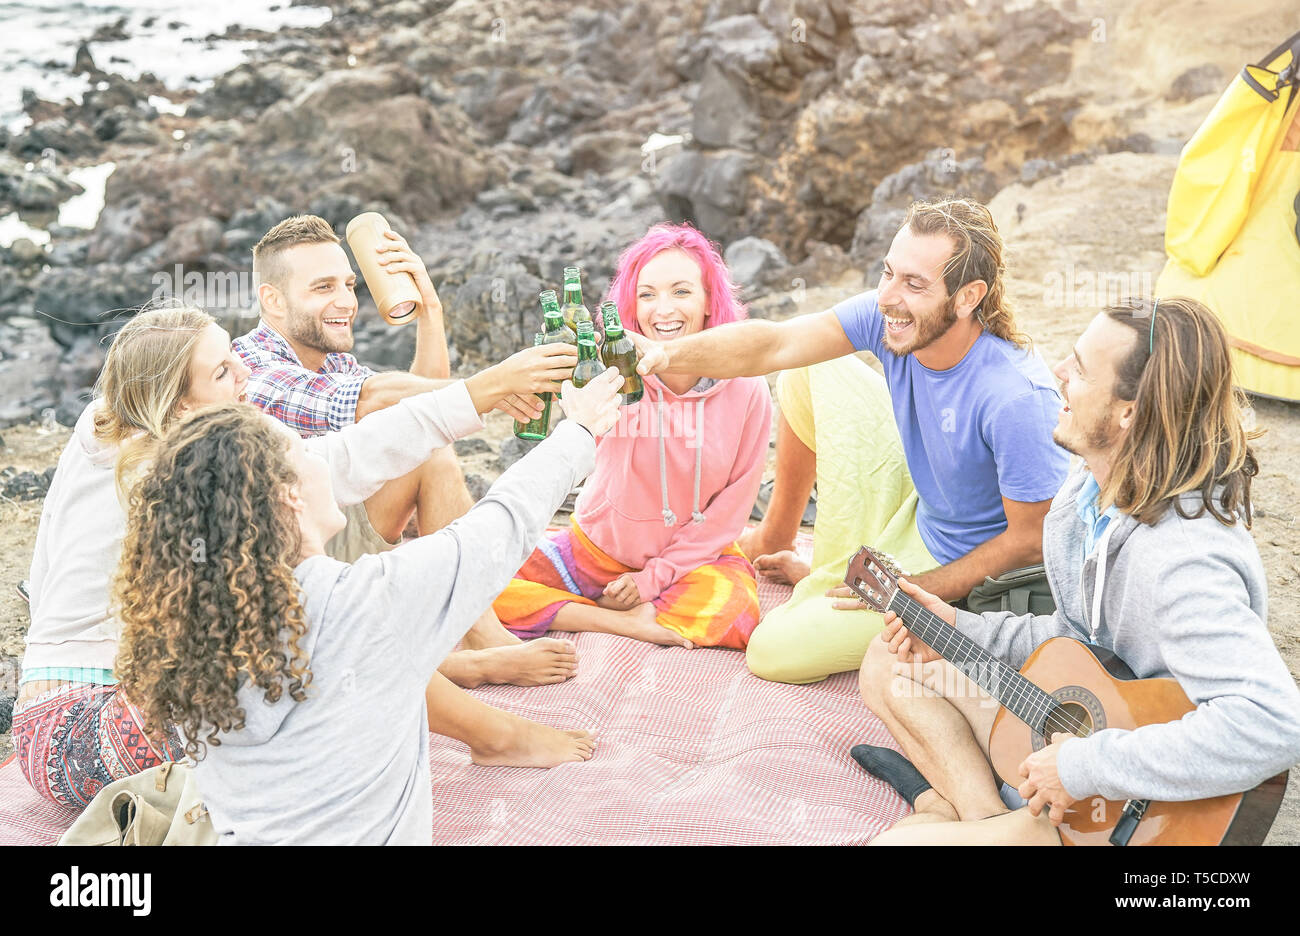 Groupe d'happy friends toasting bières et jouer la guitare camping tente sur la plage - voyage de personnes s'amusant à l'écoute de la musique et de boire Banque D'Images